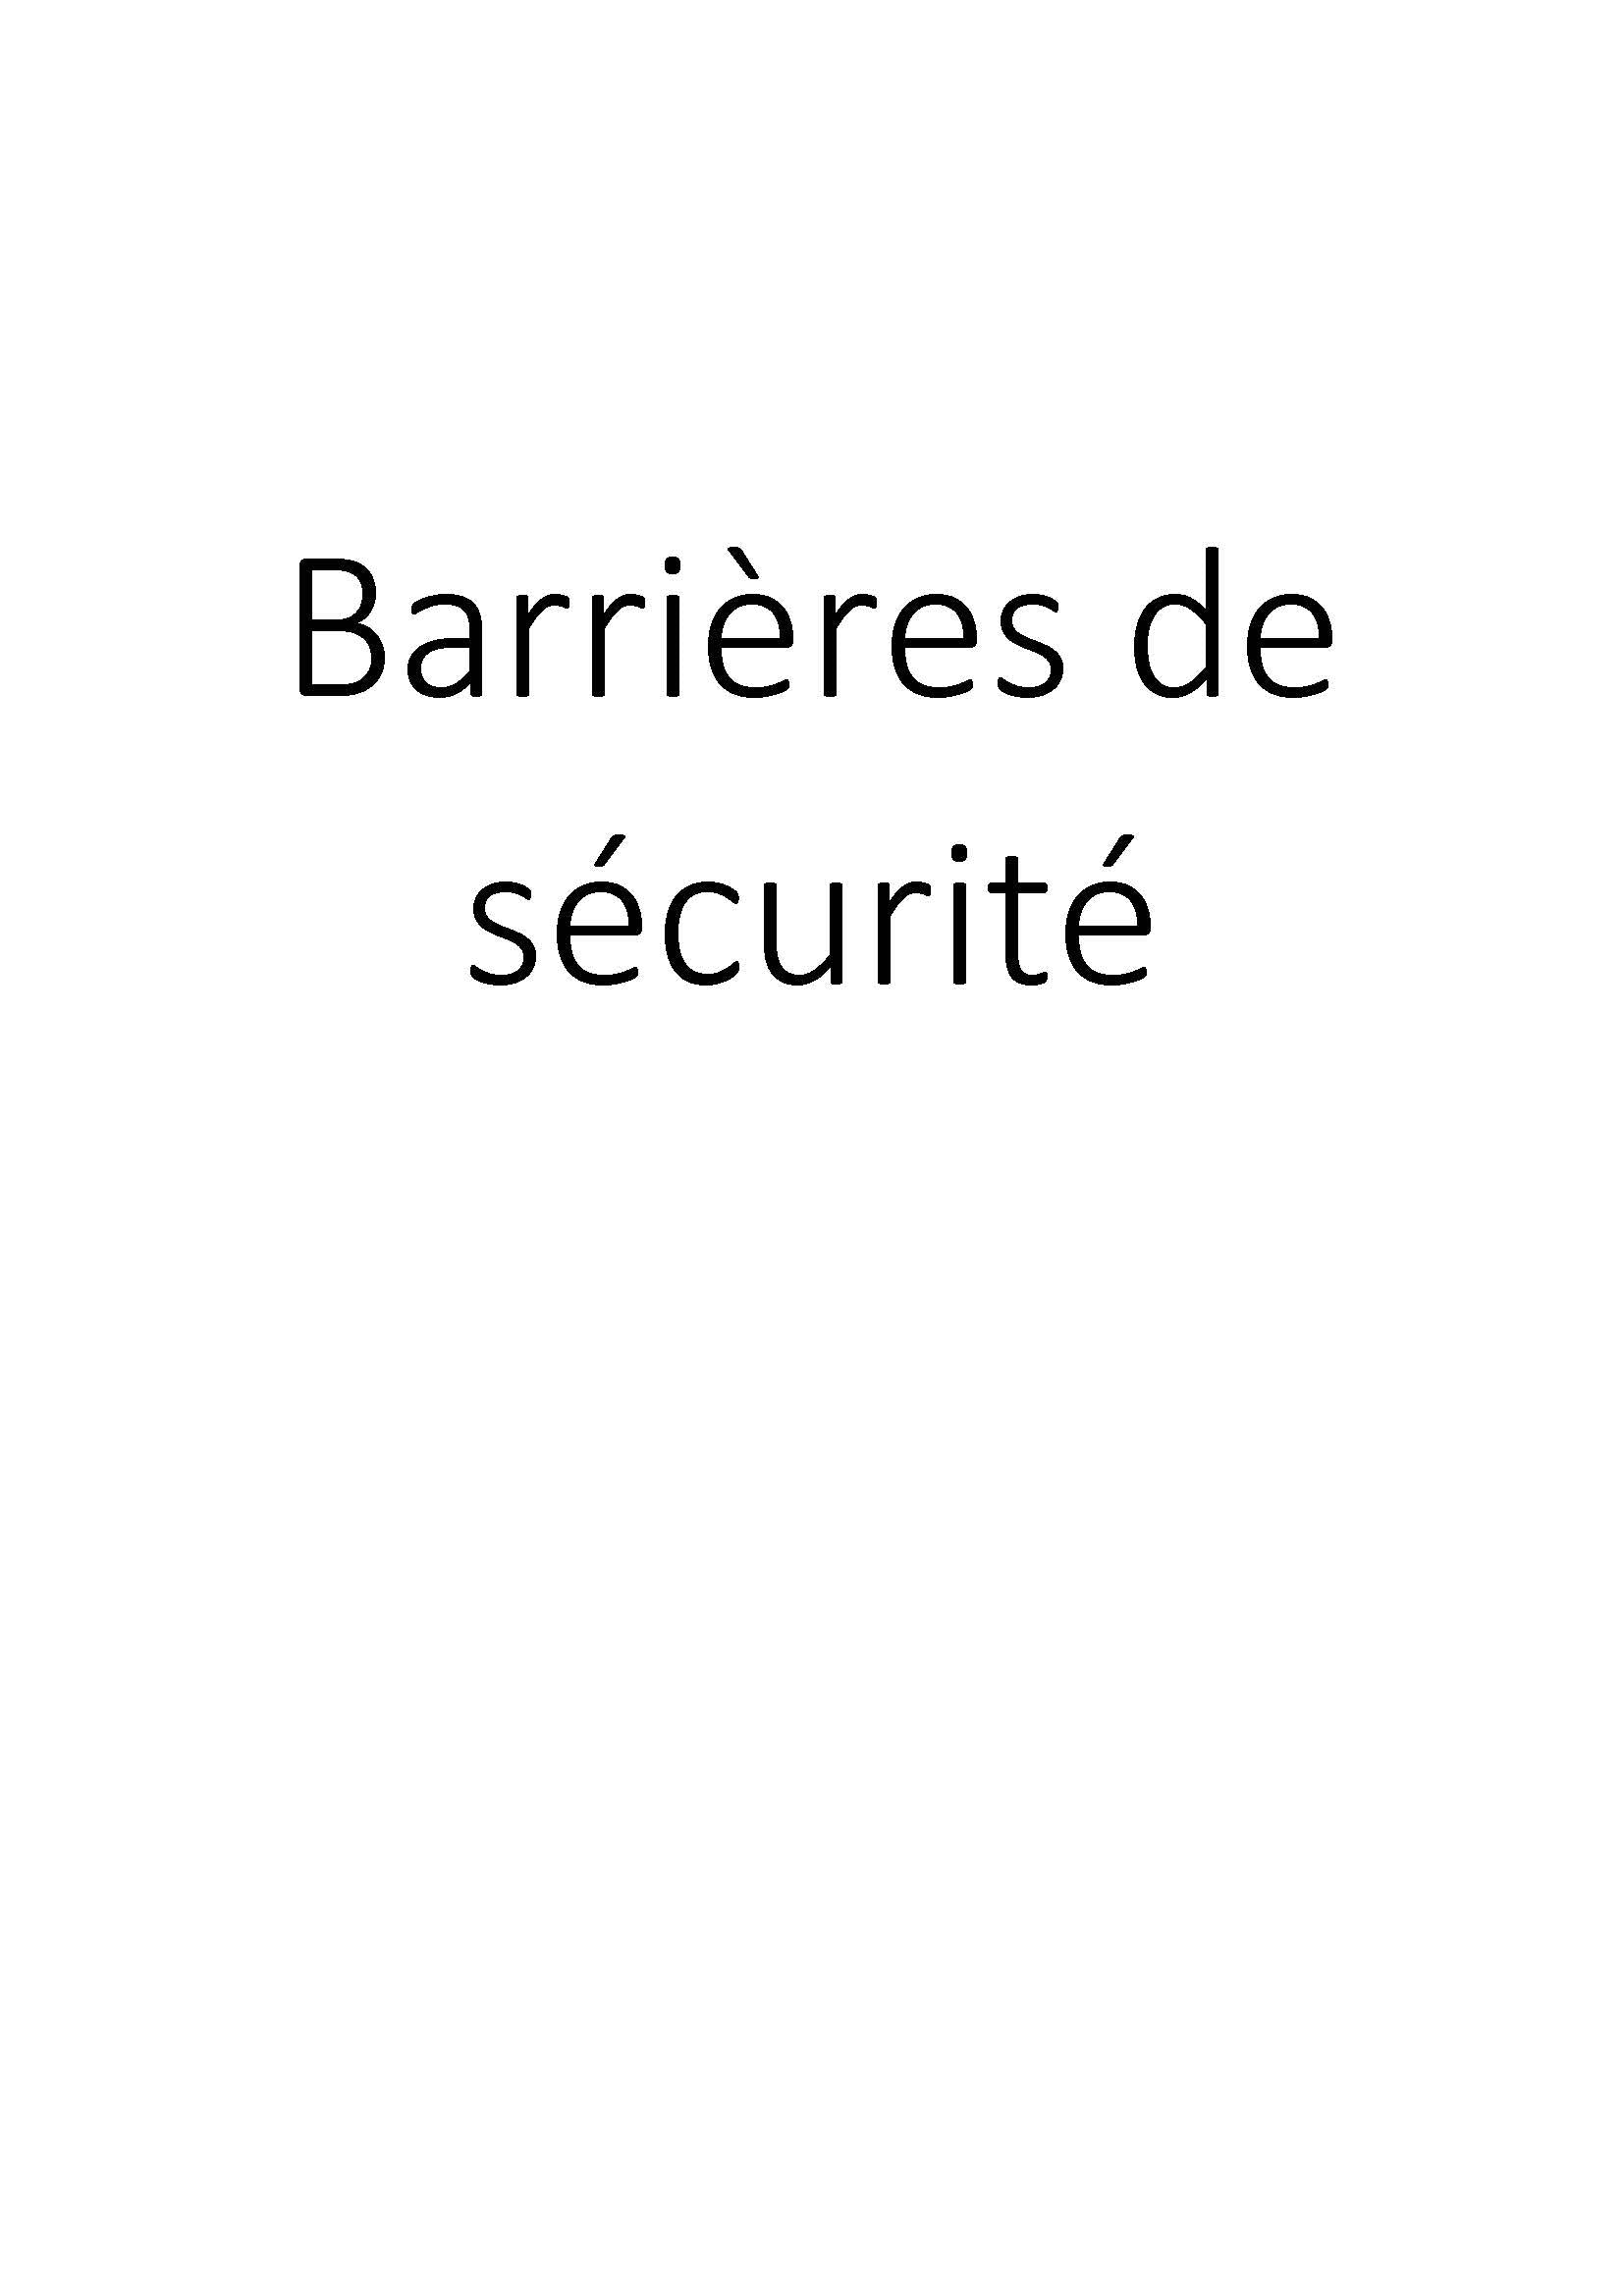 Barrières de sécurité clicktofournisseur.com